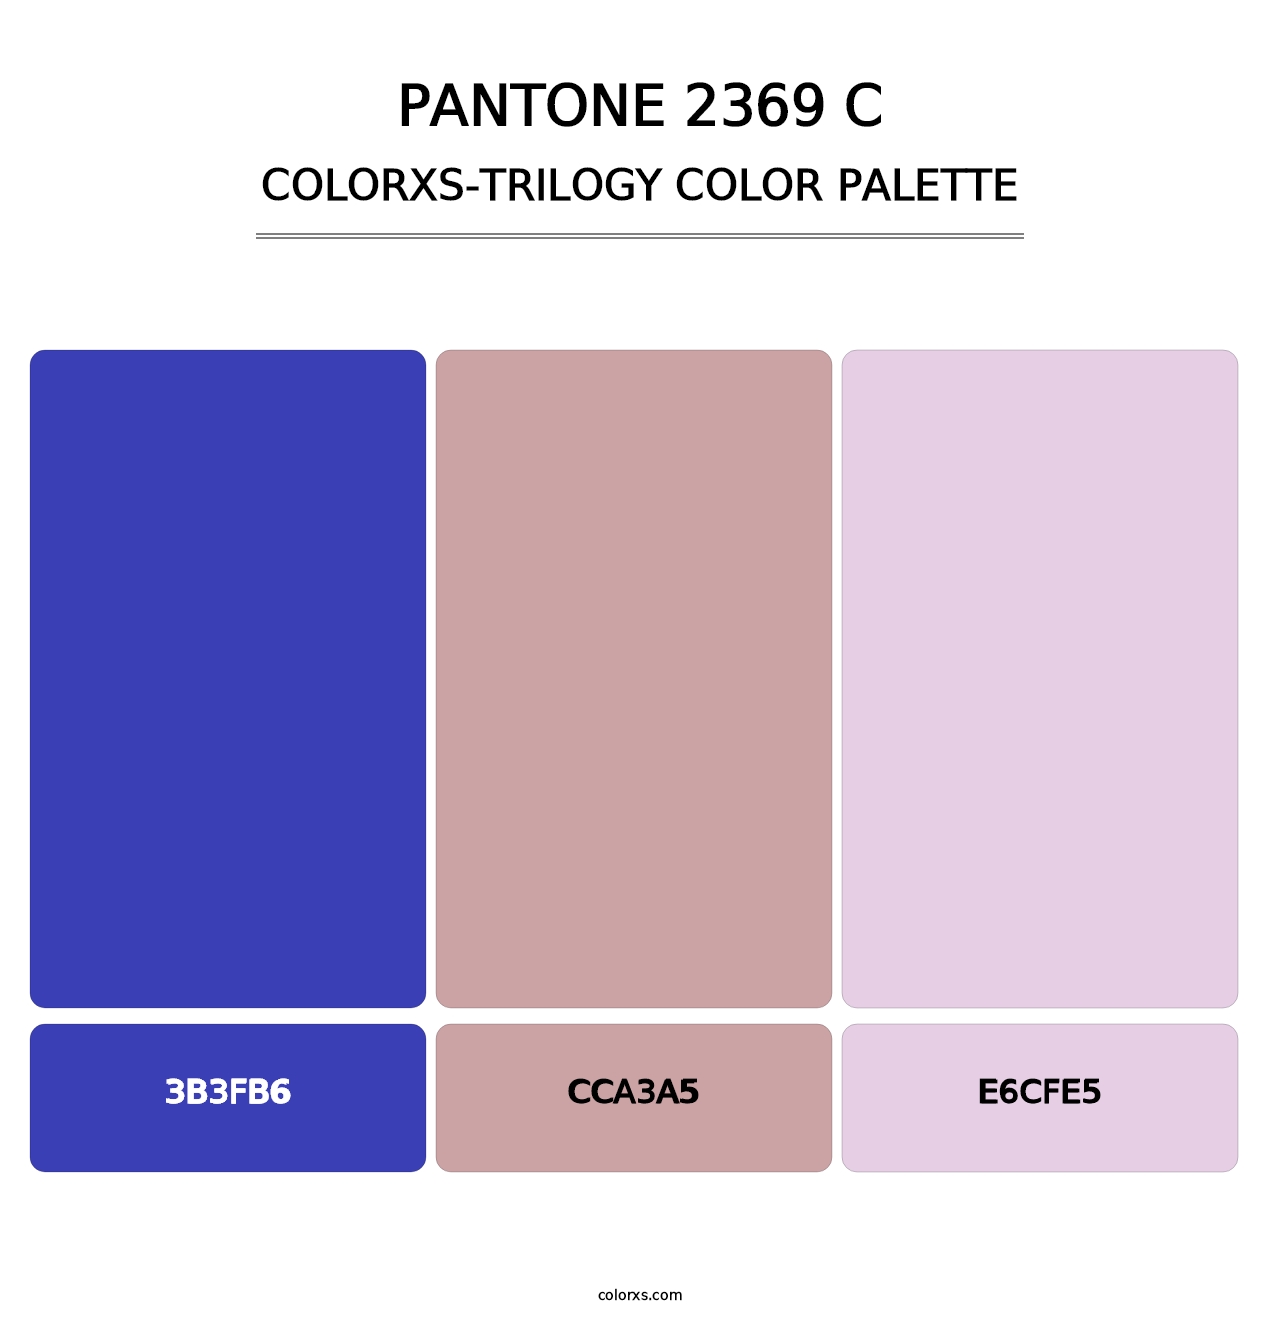 PANTONE 2369 C - Colorxs Trilogy Palette